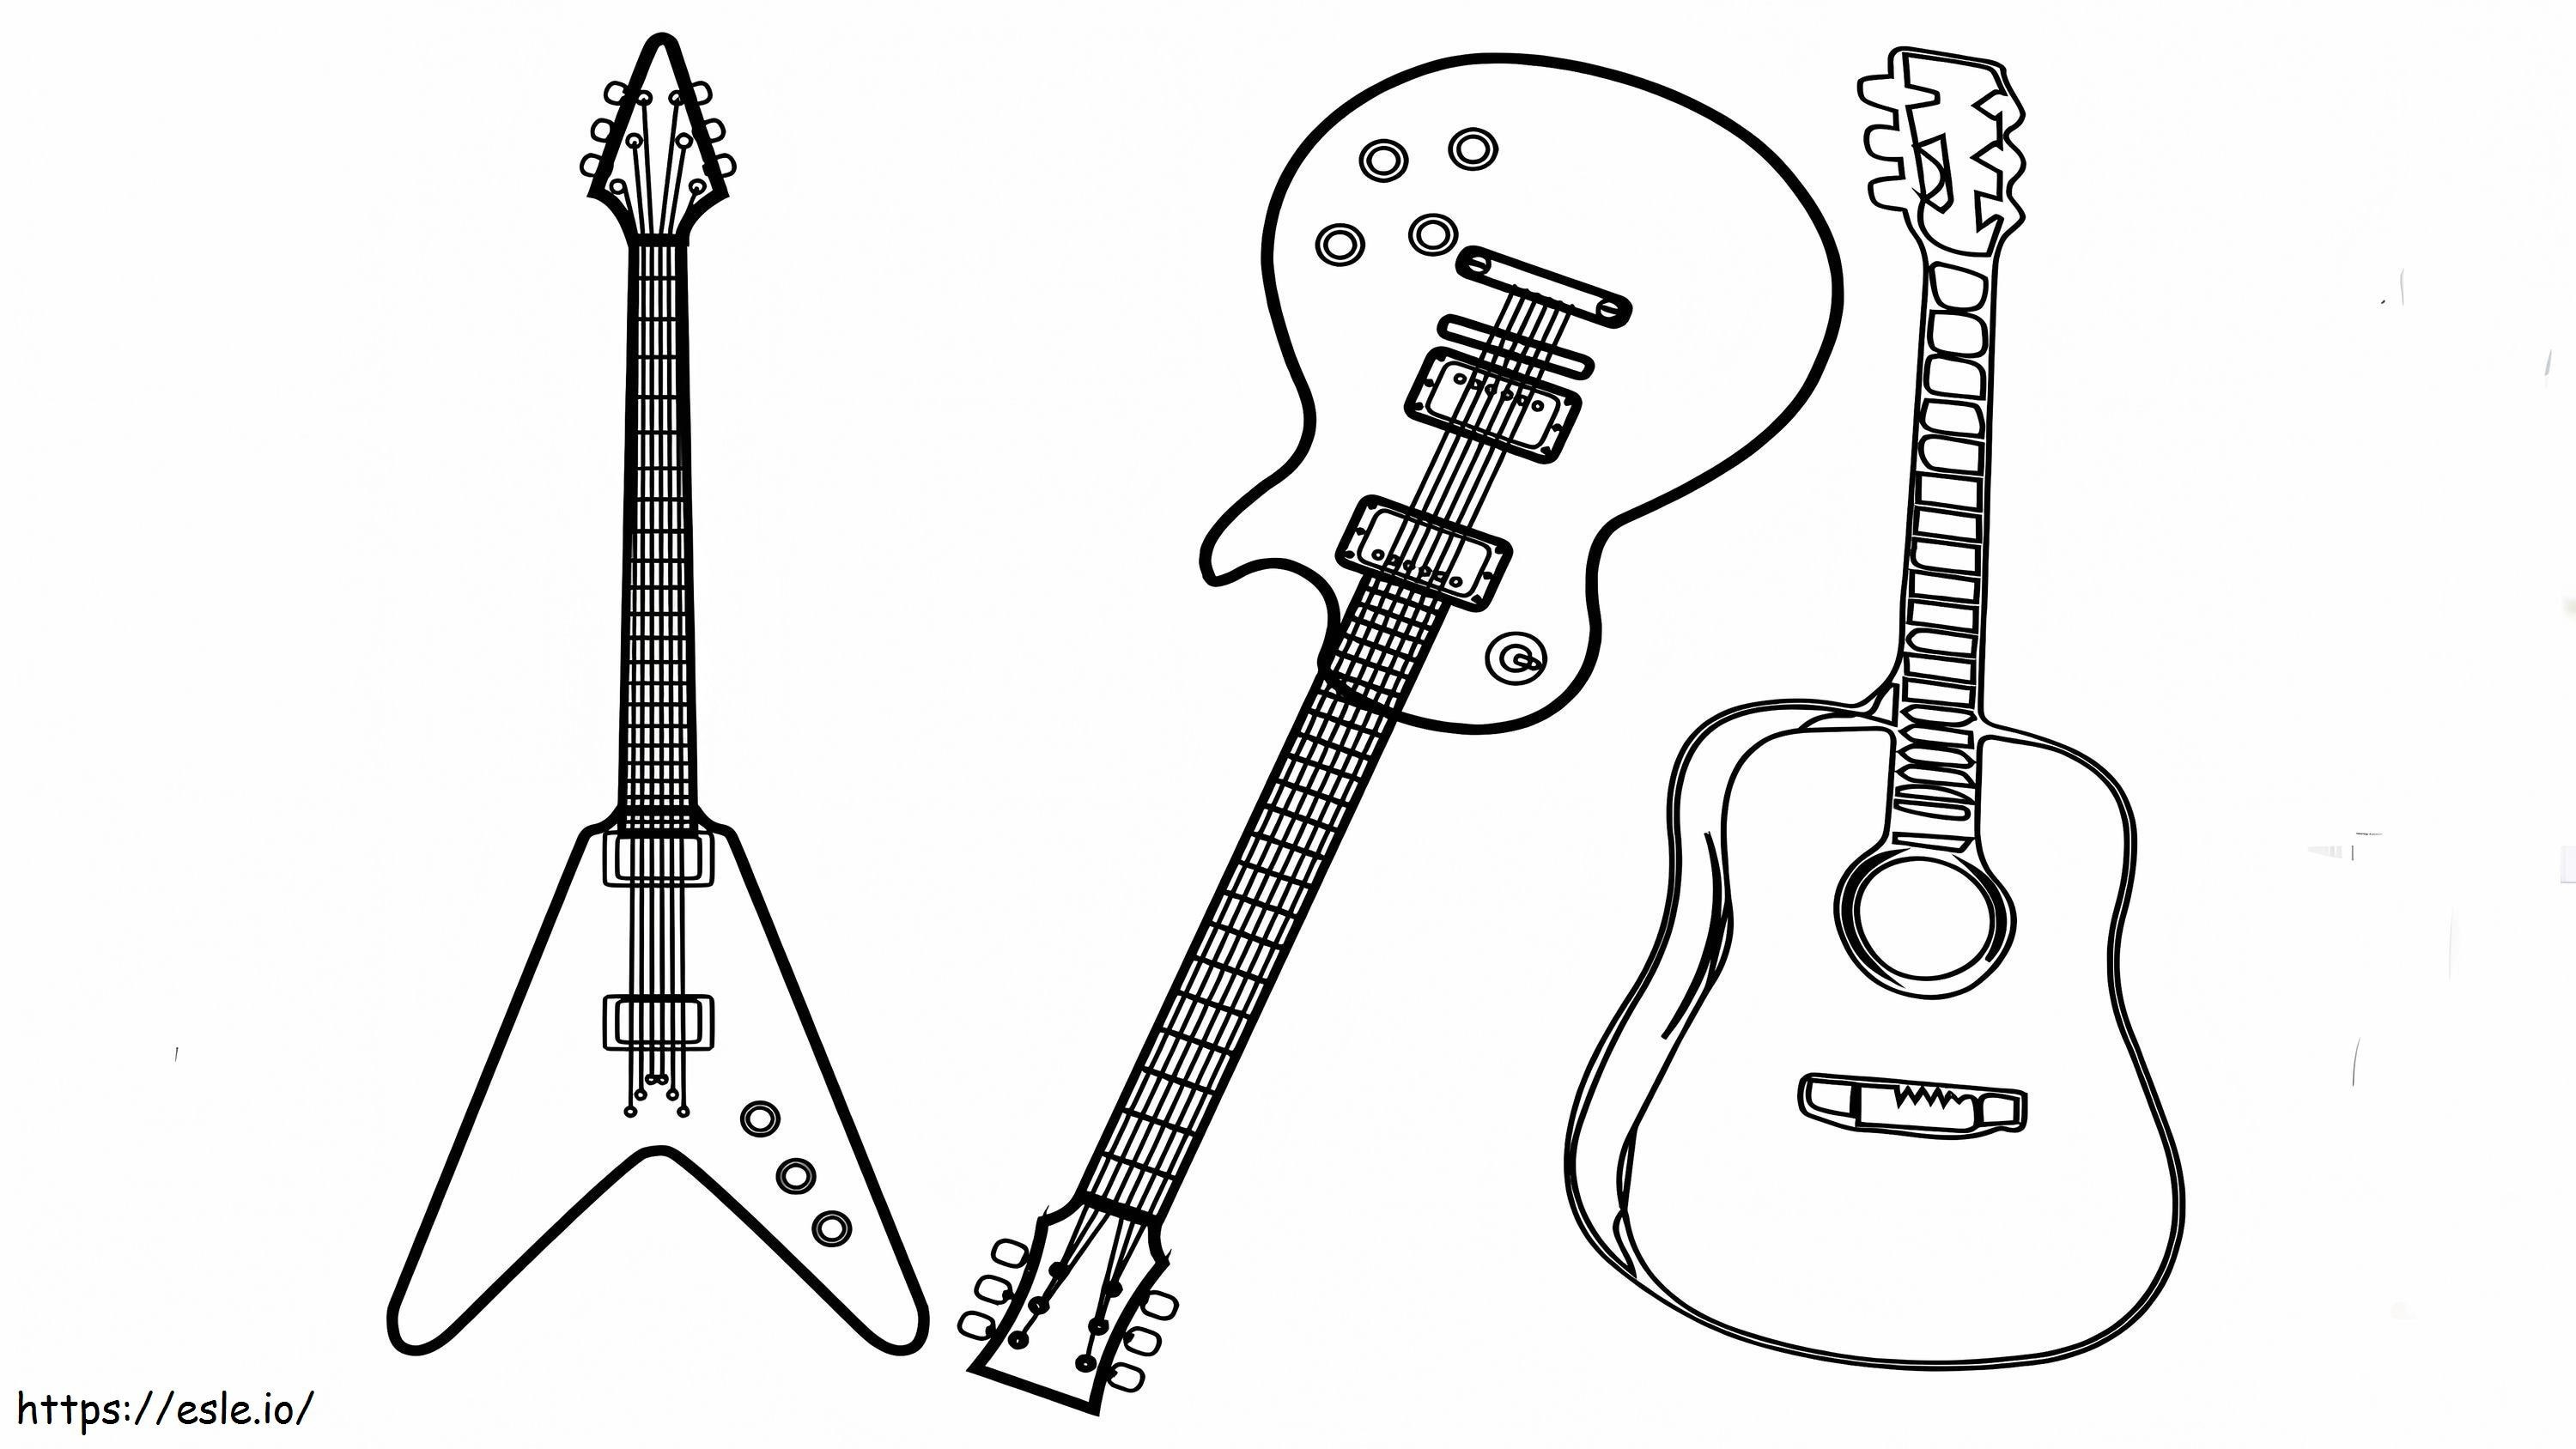 Üç Çeşit Gitar boyama